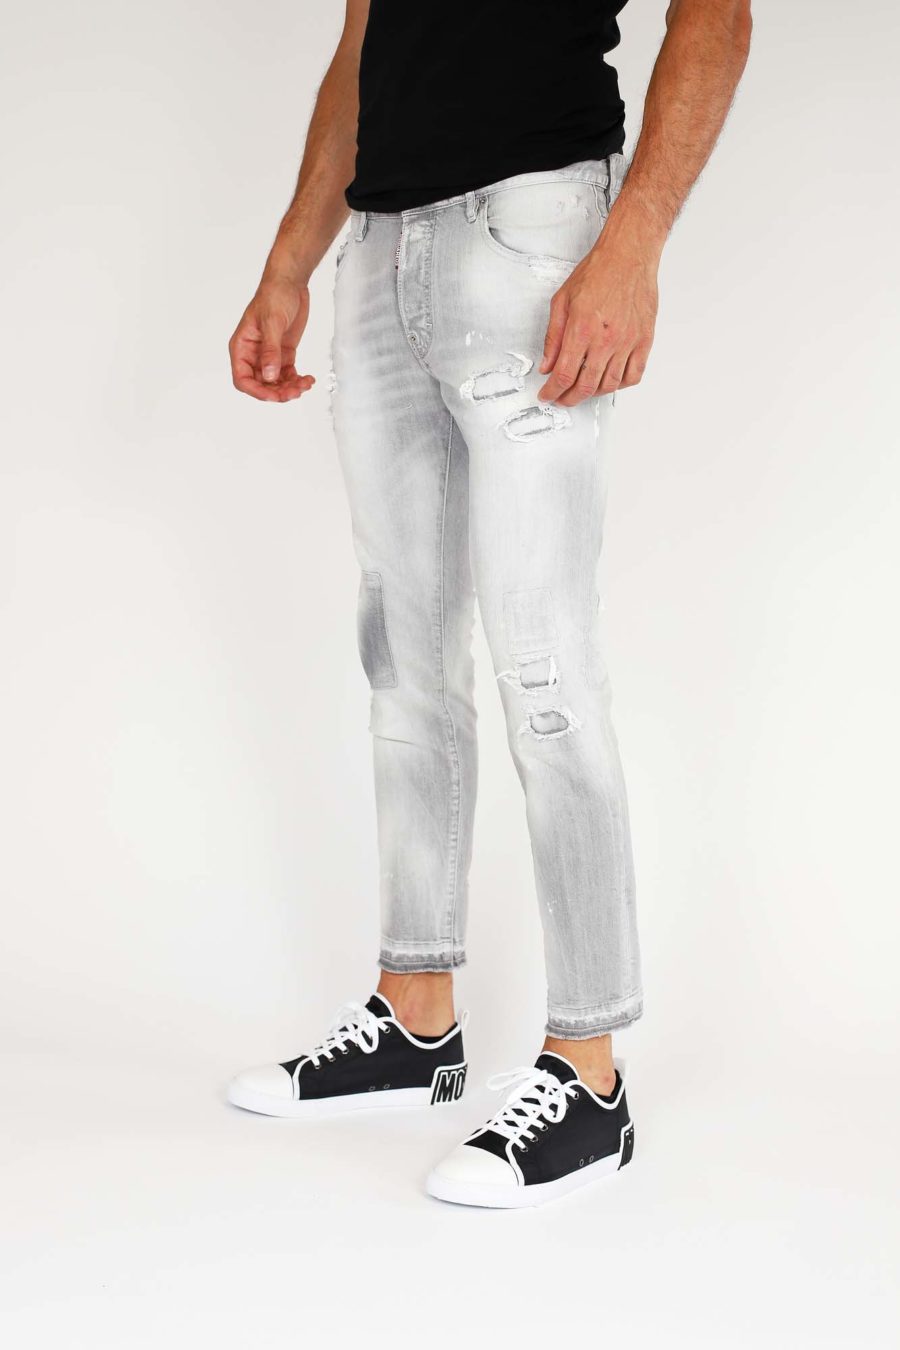 Pantalón vaquero "Skater" gris claro con parches - IMG 9853